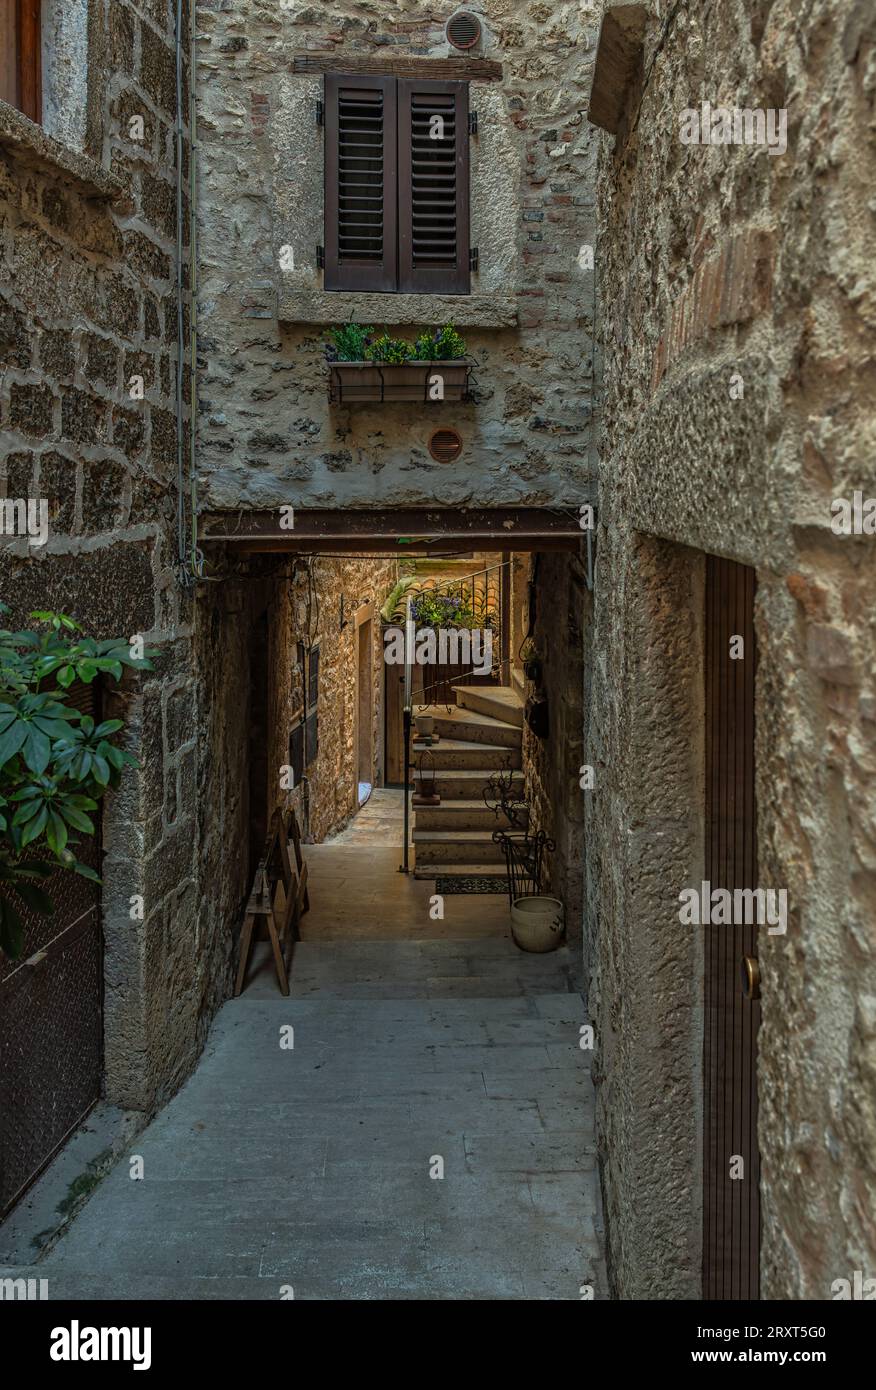 Callejones y escaleras entre casas de piedra y coloridas cajas de flores en el pueblo medieval de Castel Trosino. Ascoli Piceno, Región de las Marcas, Foto de stock